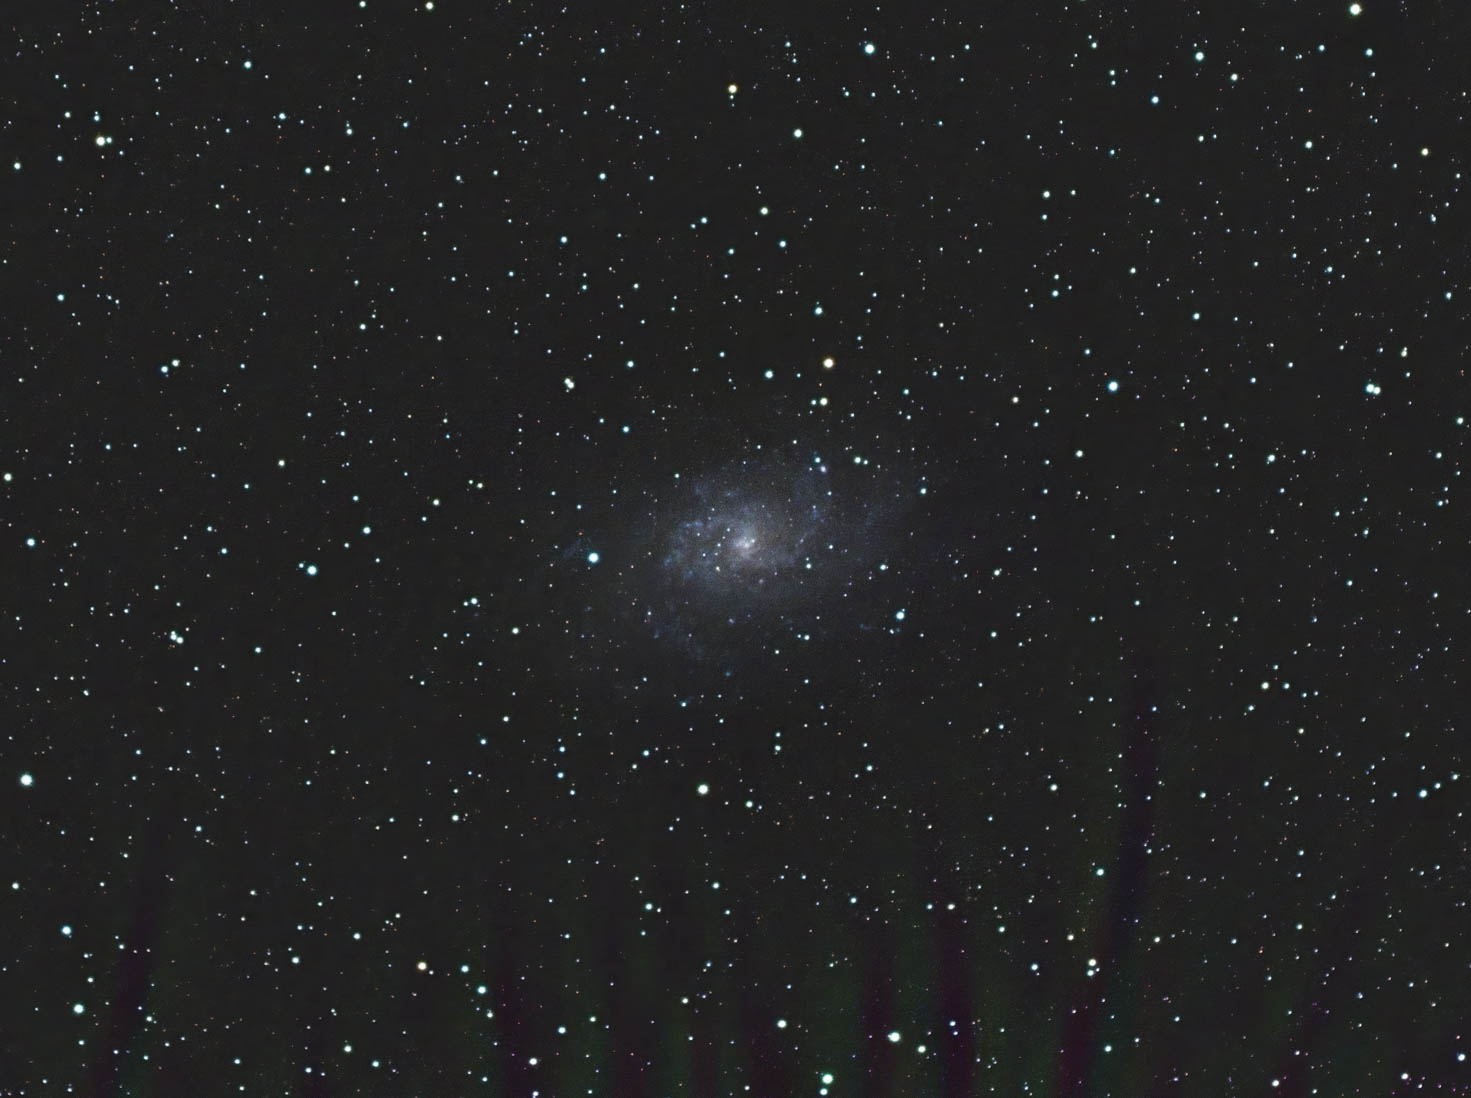 20200222-20200223 Messier 33, or Triangulum Galaxy